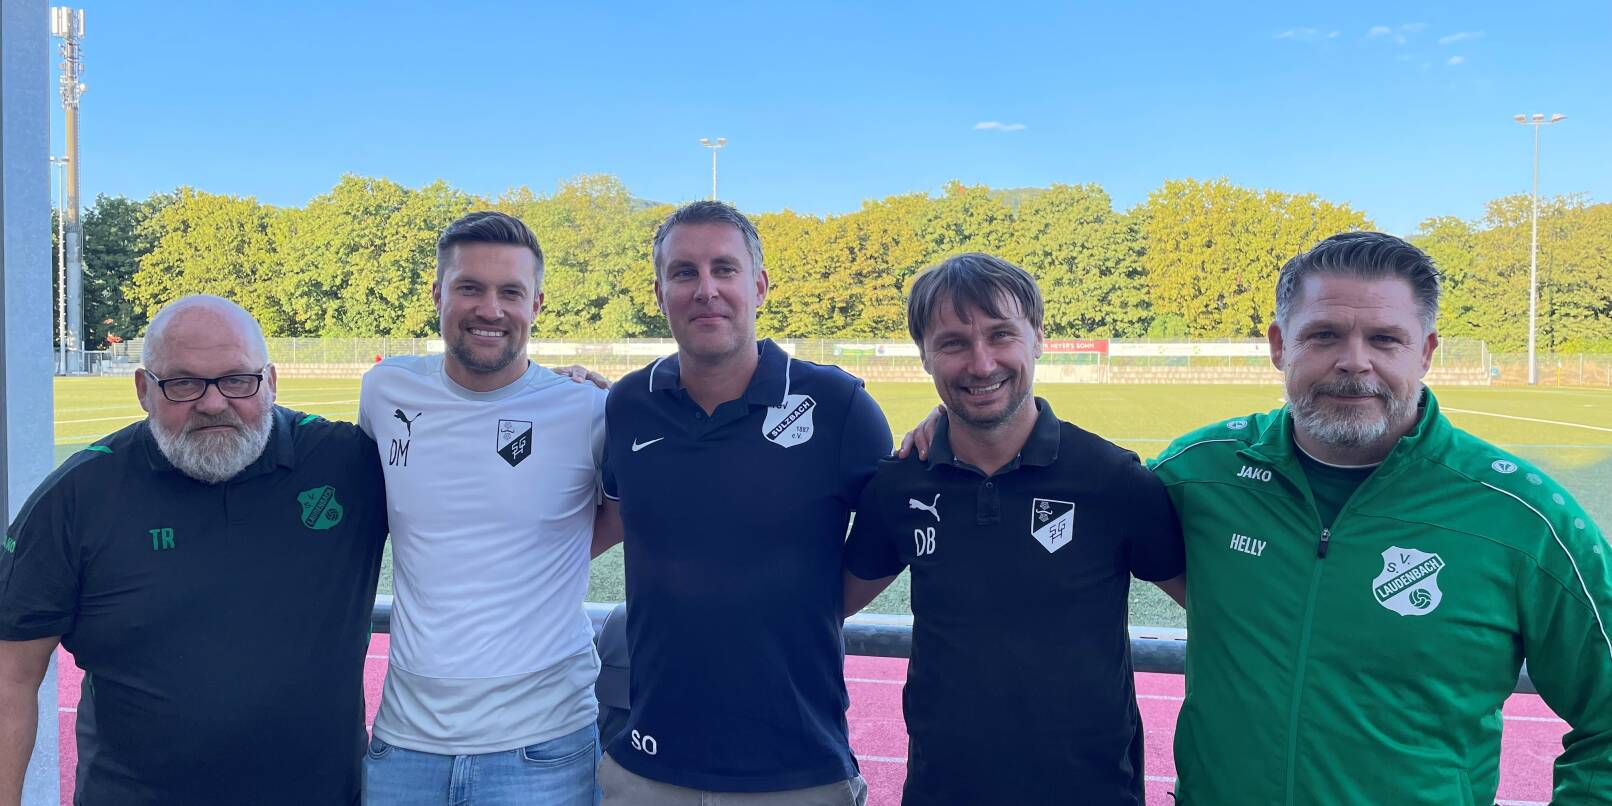 Auf einer Wellenlänge: Thomas Radermacher, Dominik Metzger, Stefan Oswald, Damian Bonk und Björn Helly (von links) wollen den Jugendfußball für Laudenbach, Hemsbach und Sulzbach voranbringen.